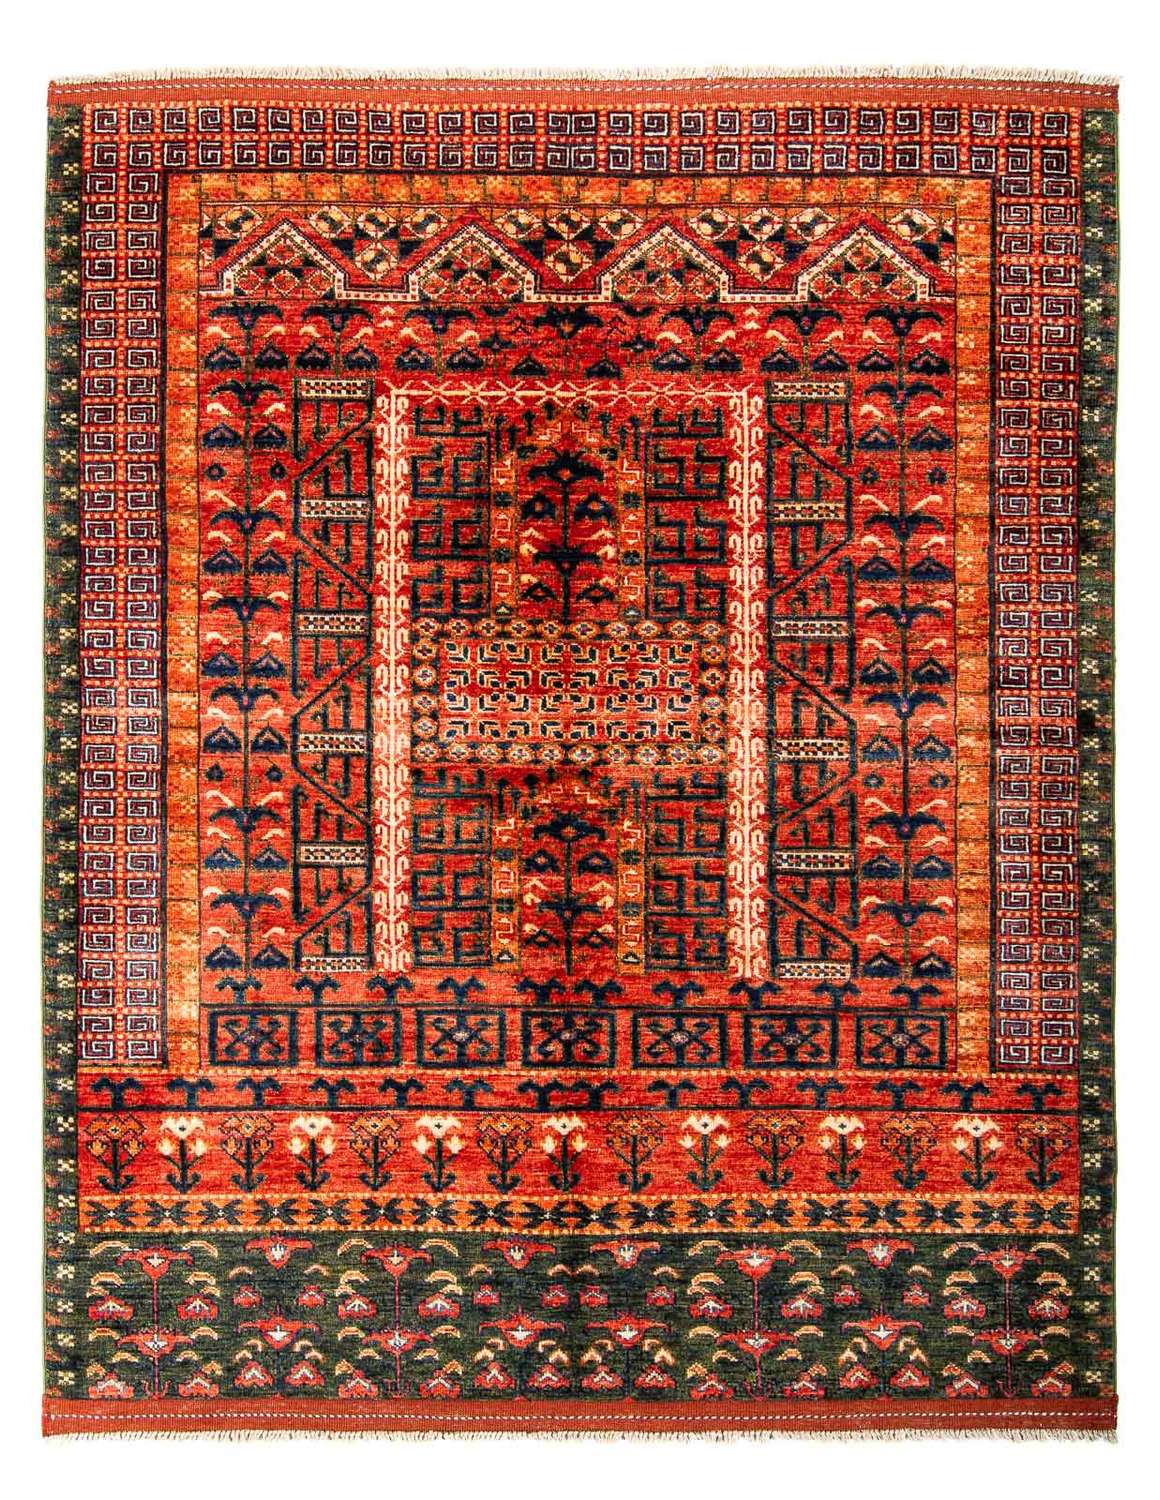 Afghan Rug - 196 x 158 cm - red